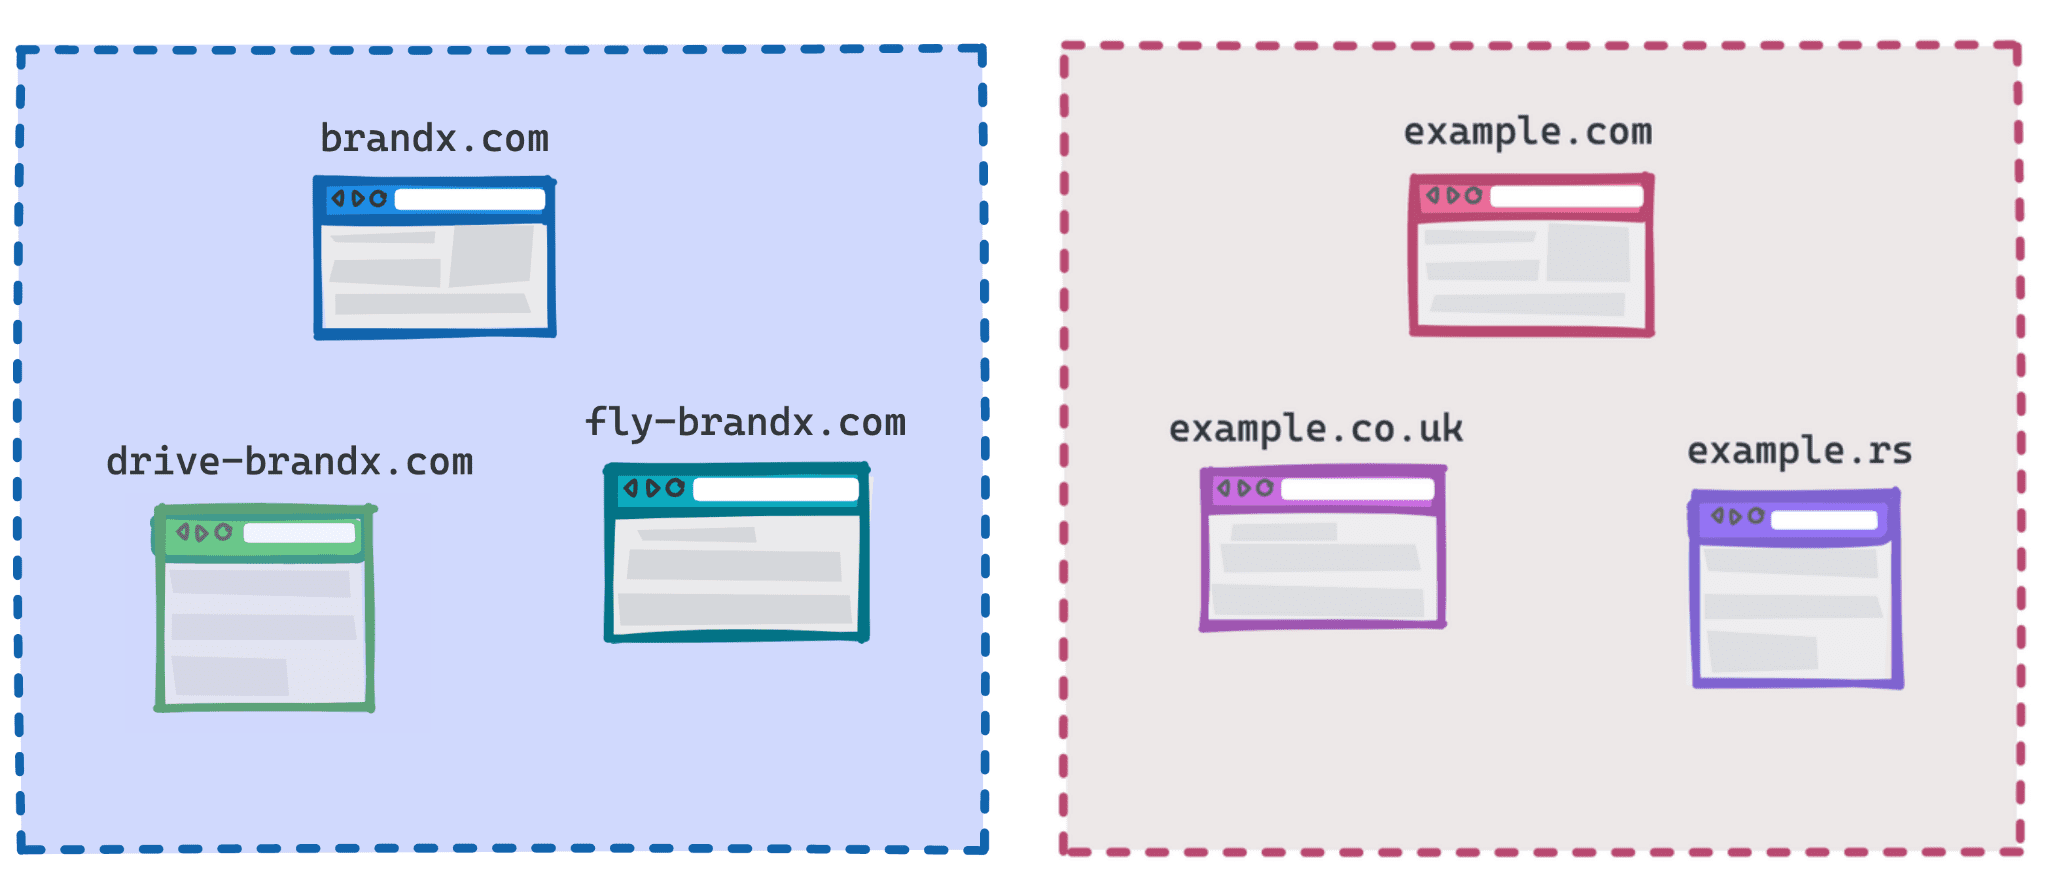 Schéma illustrant le groupe brandx.com, fly-brandx.com et drive-brandx.com, et example.com, example.rs, example.co.uk un autre groupe